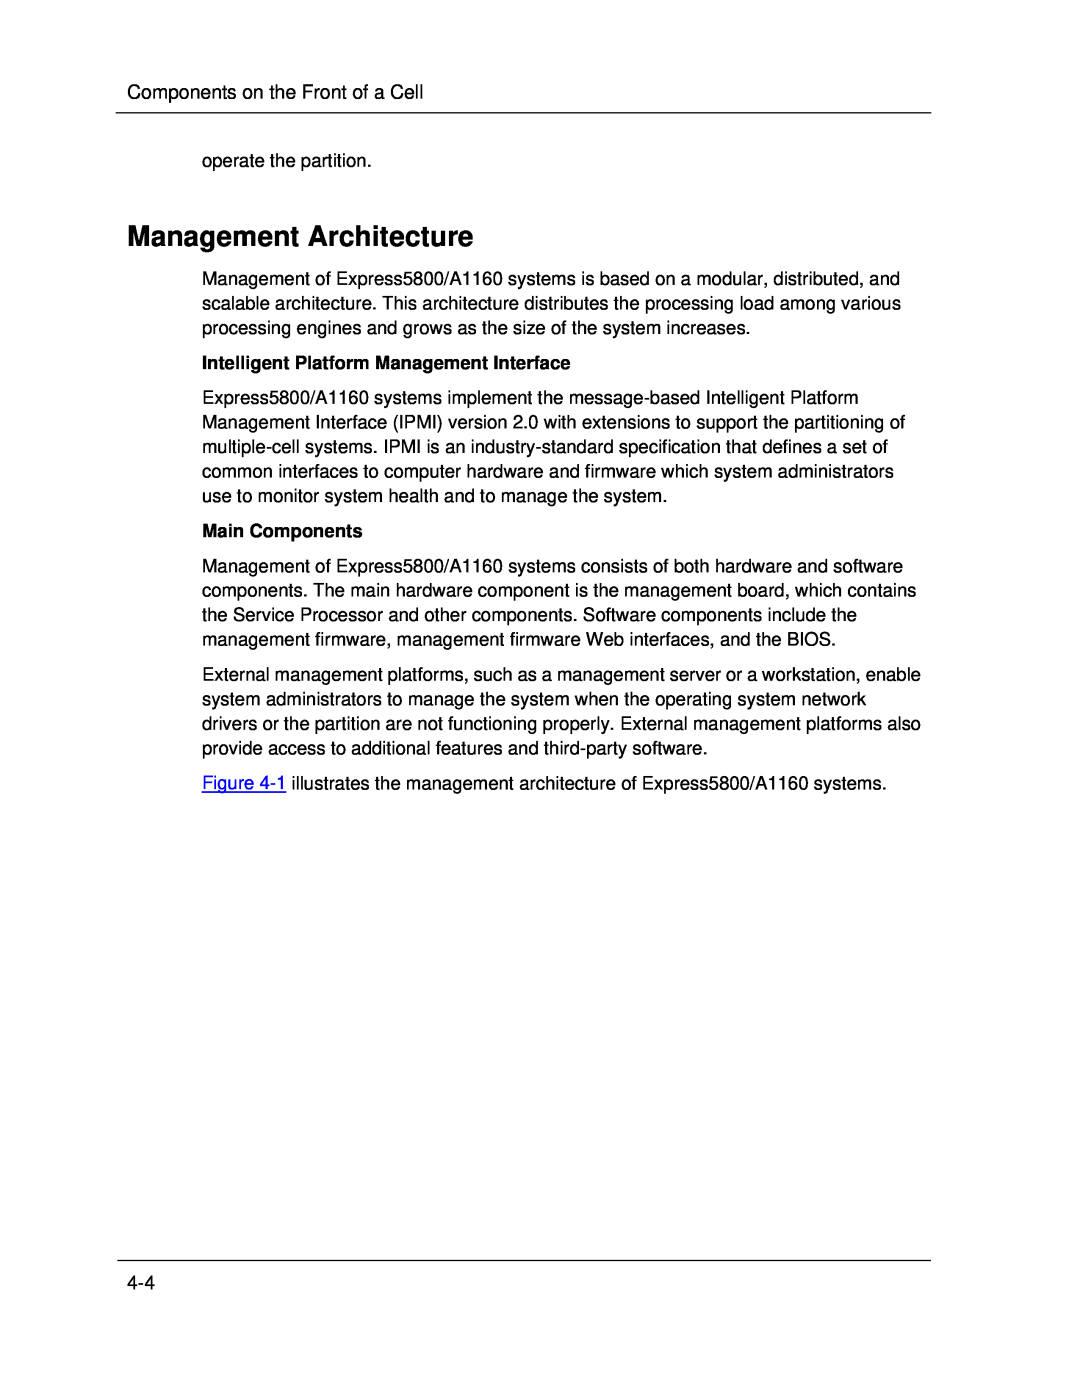 NEC A1160 manual Management Architecture, Intelligent Platform Management Interface, Main Components 